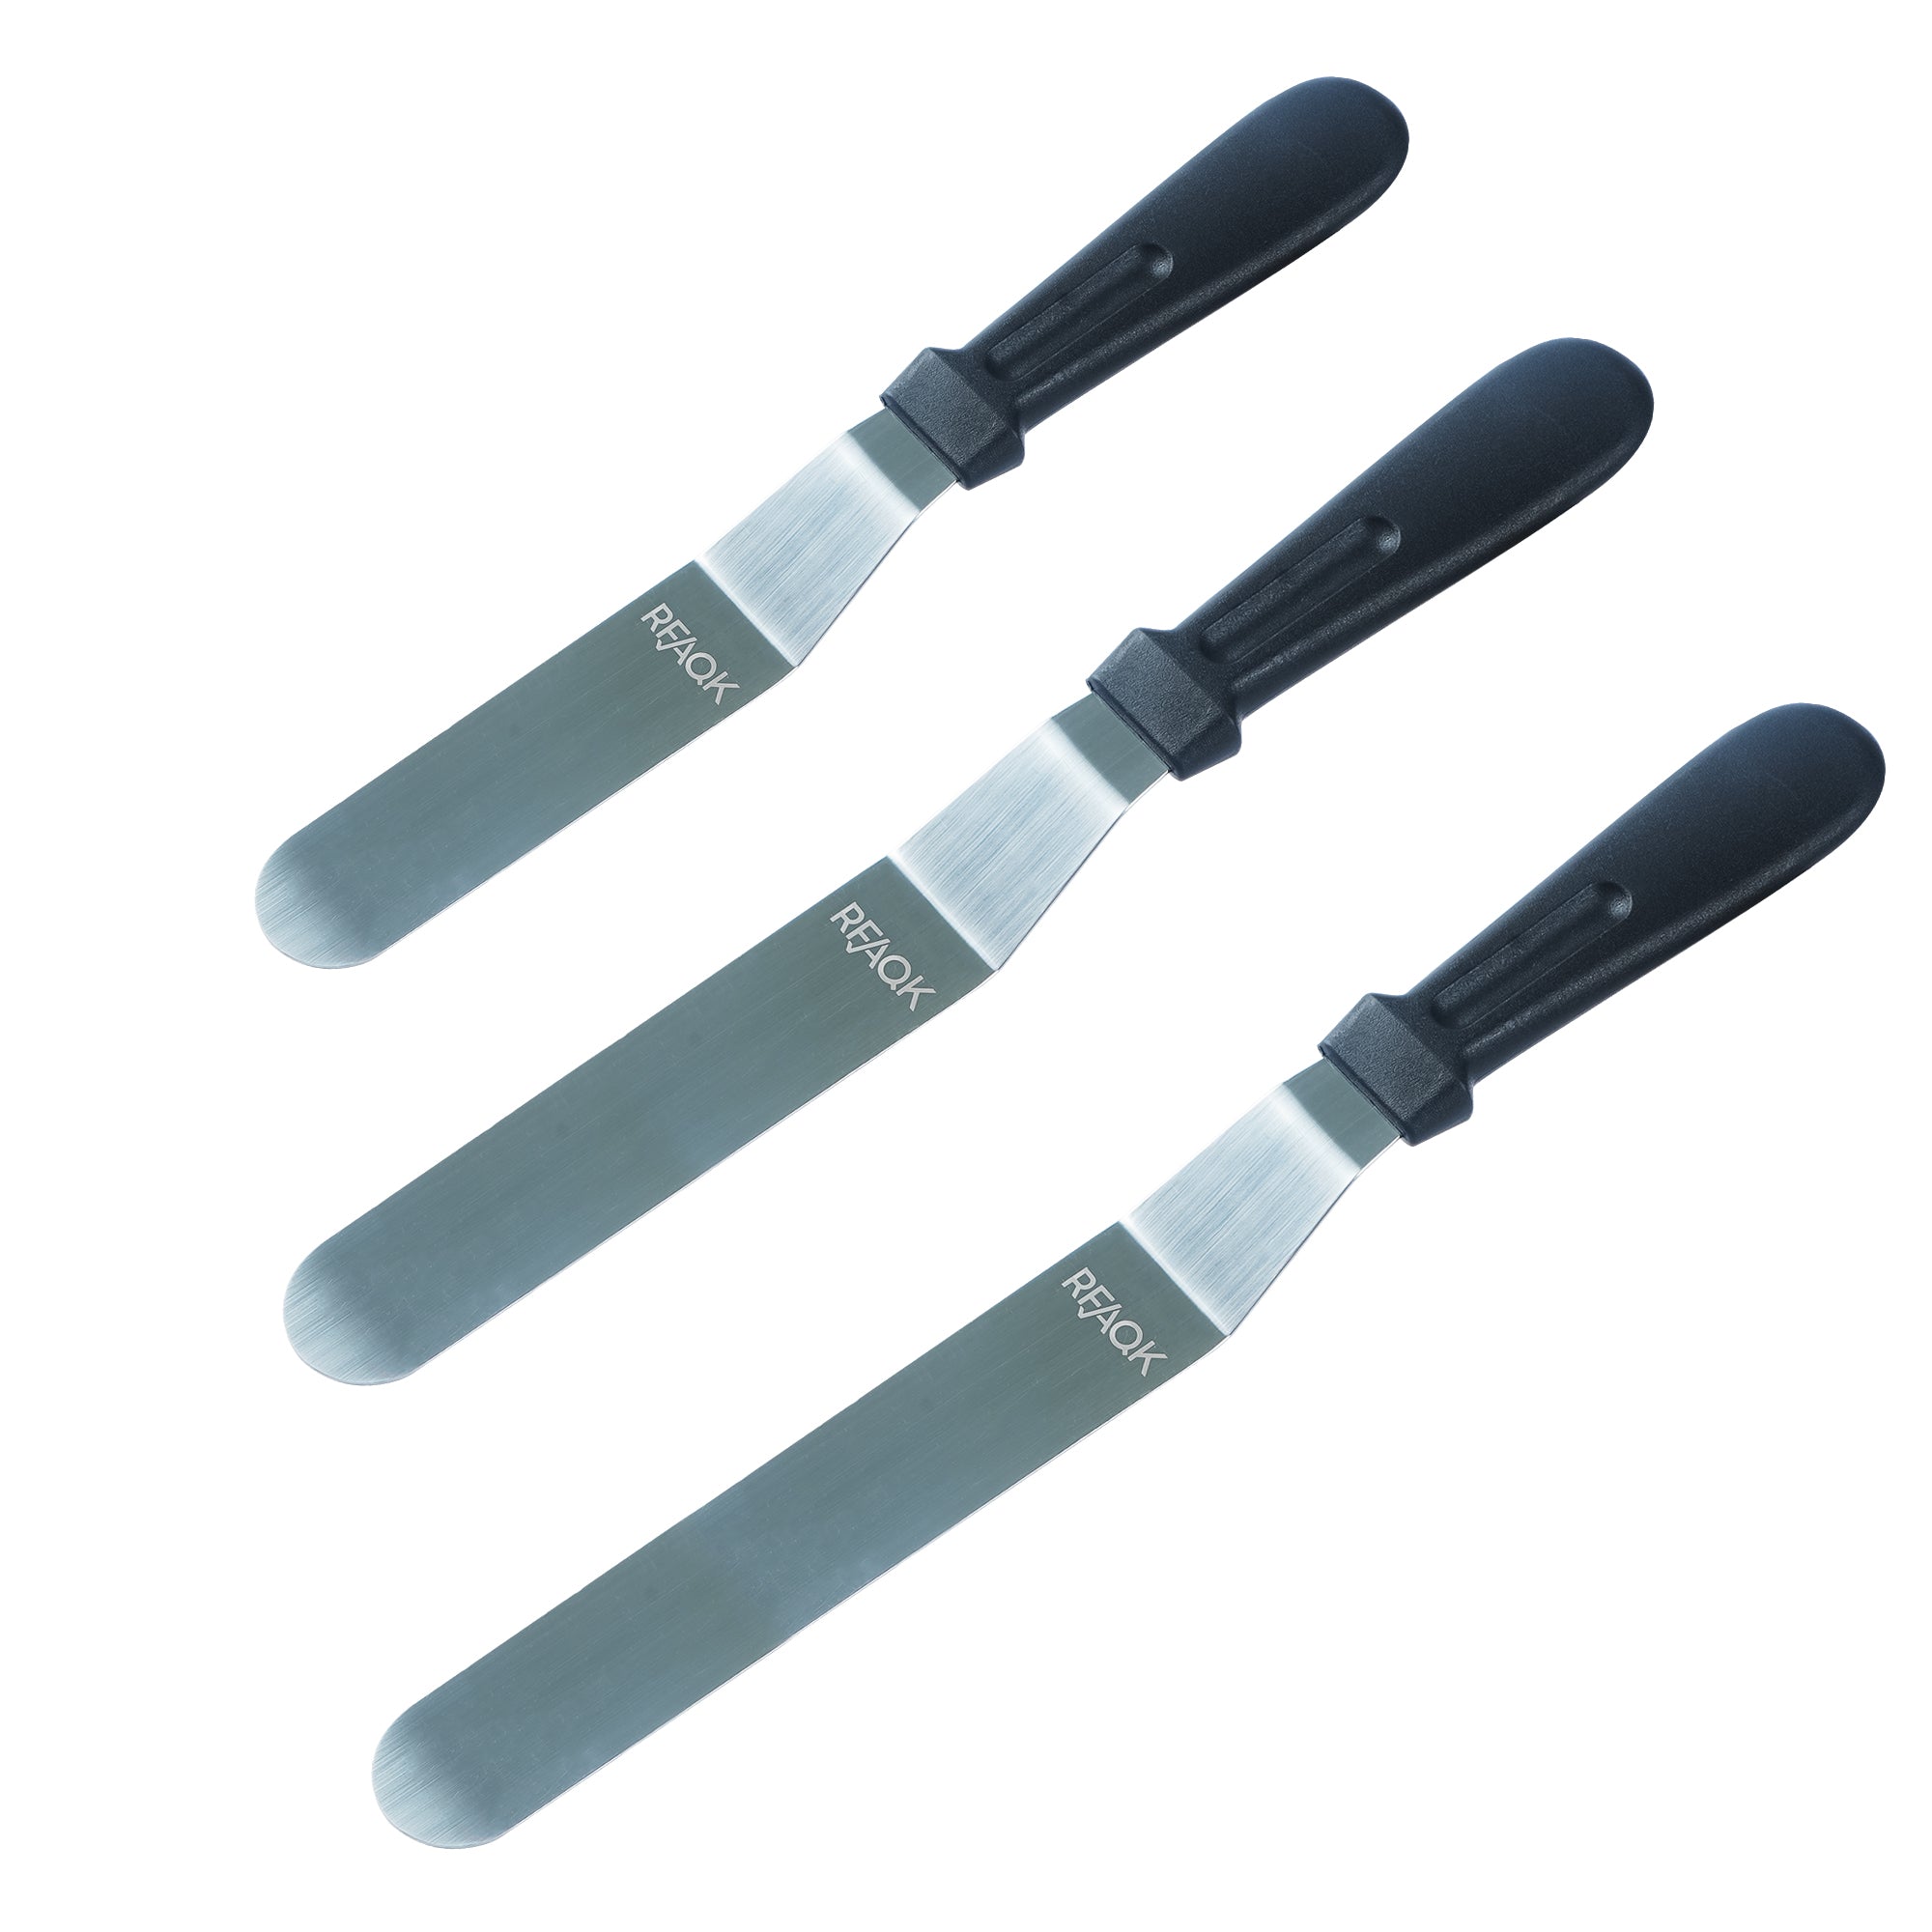 3 Angled Spatulas - RFAQK piping icing tools